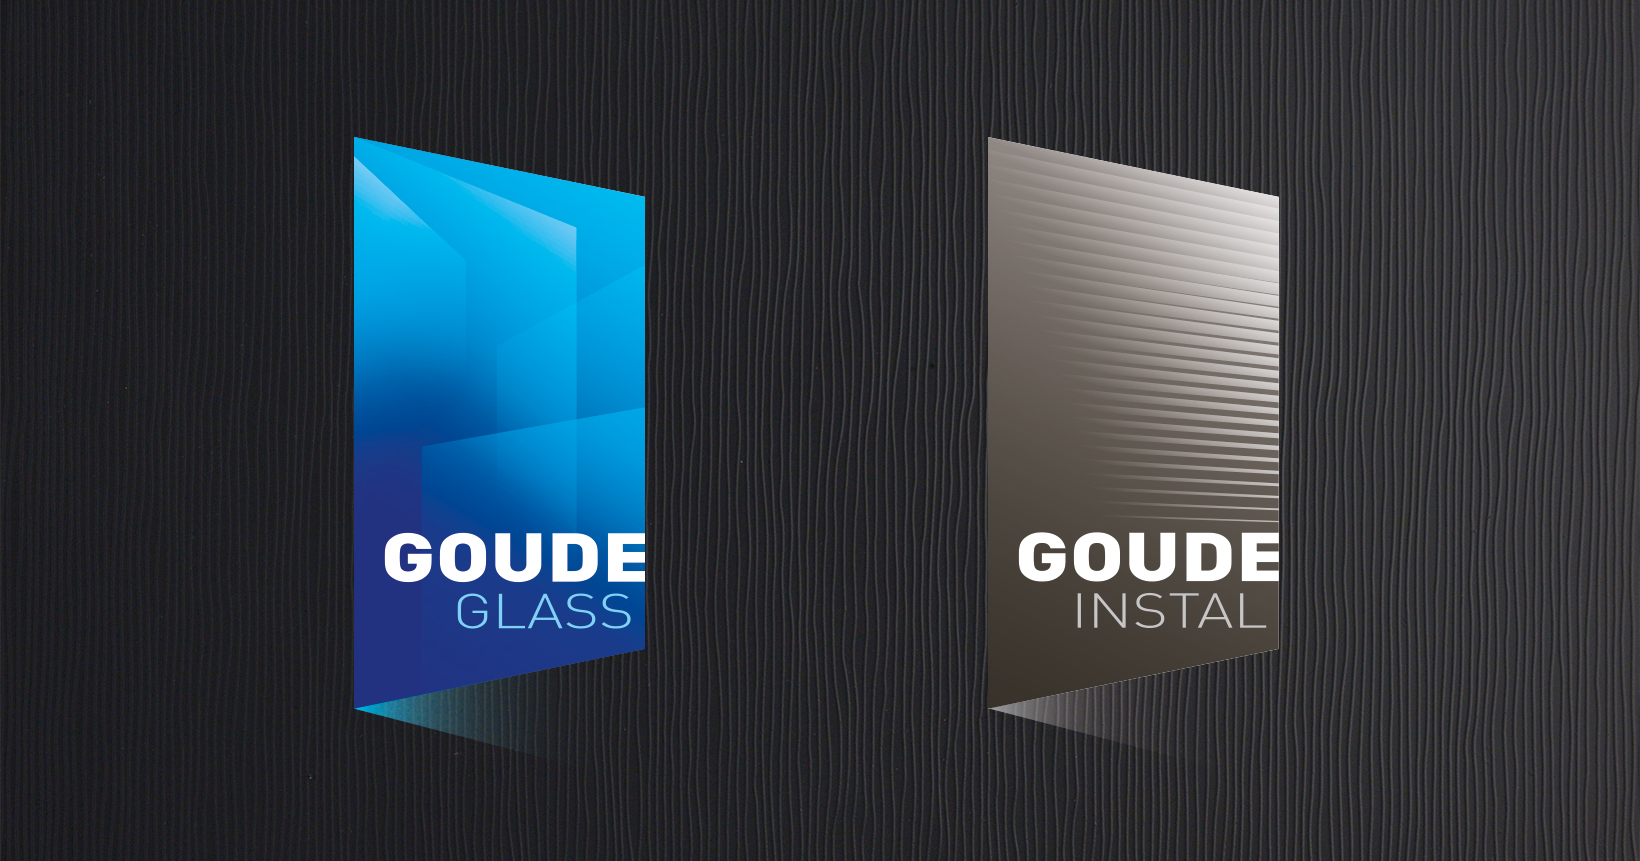 Logos Goude Glass et Goude Instal, sur fond noir texturé